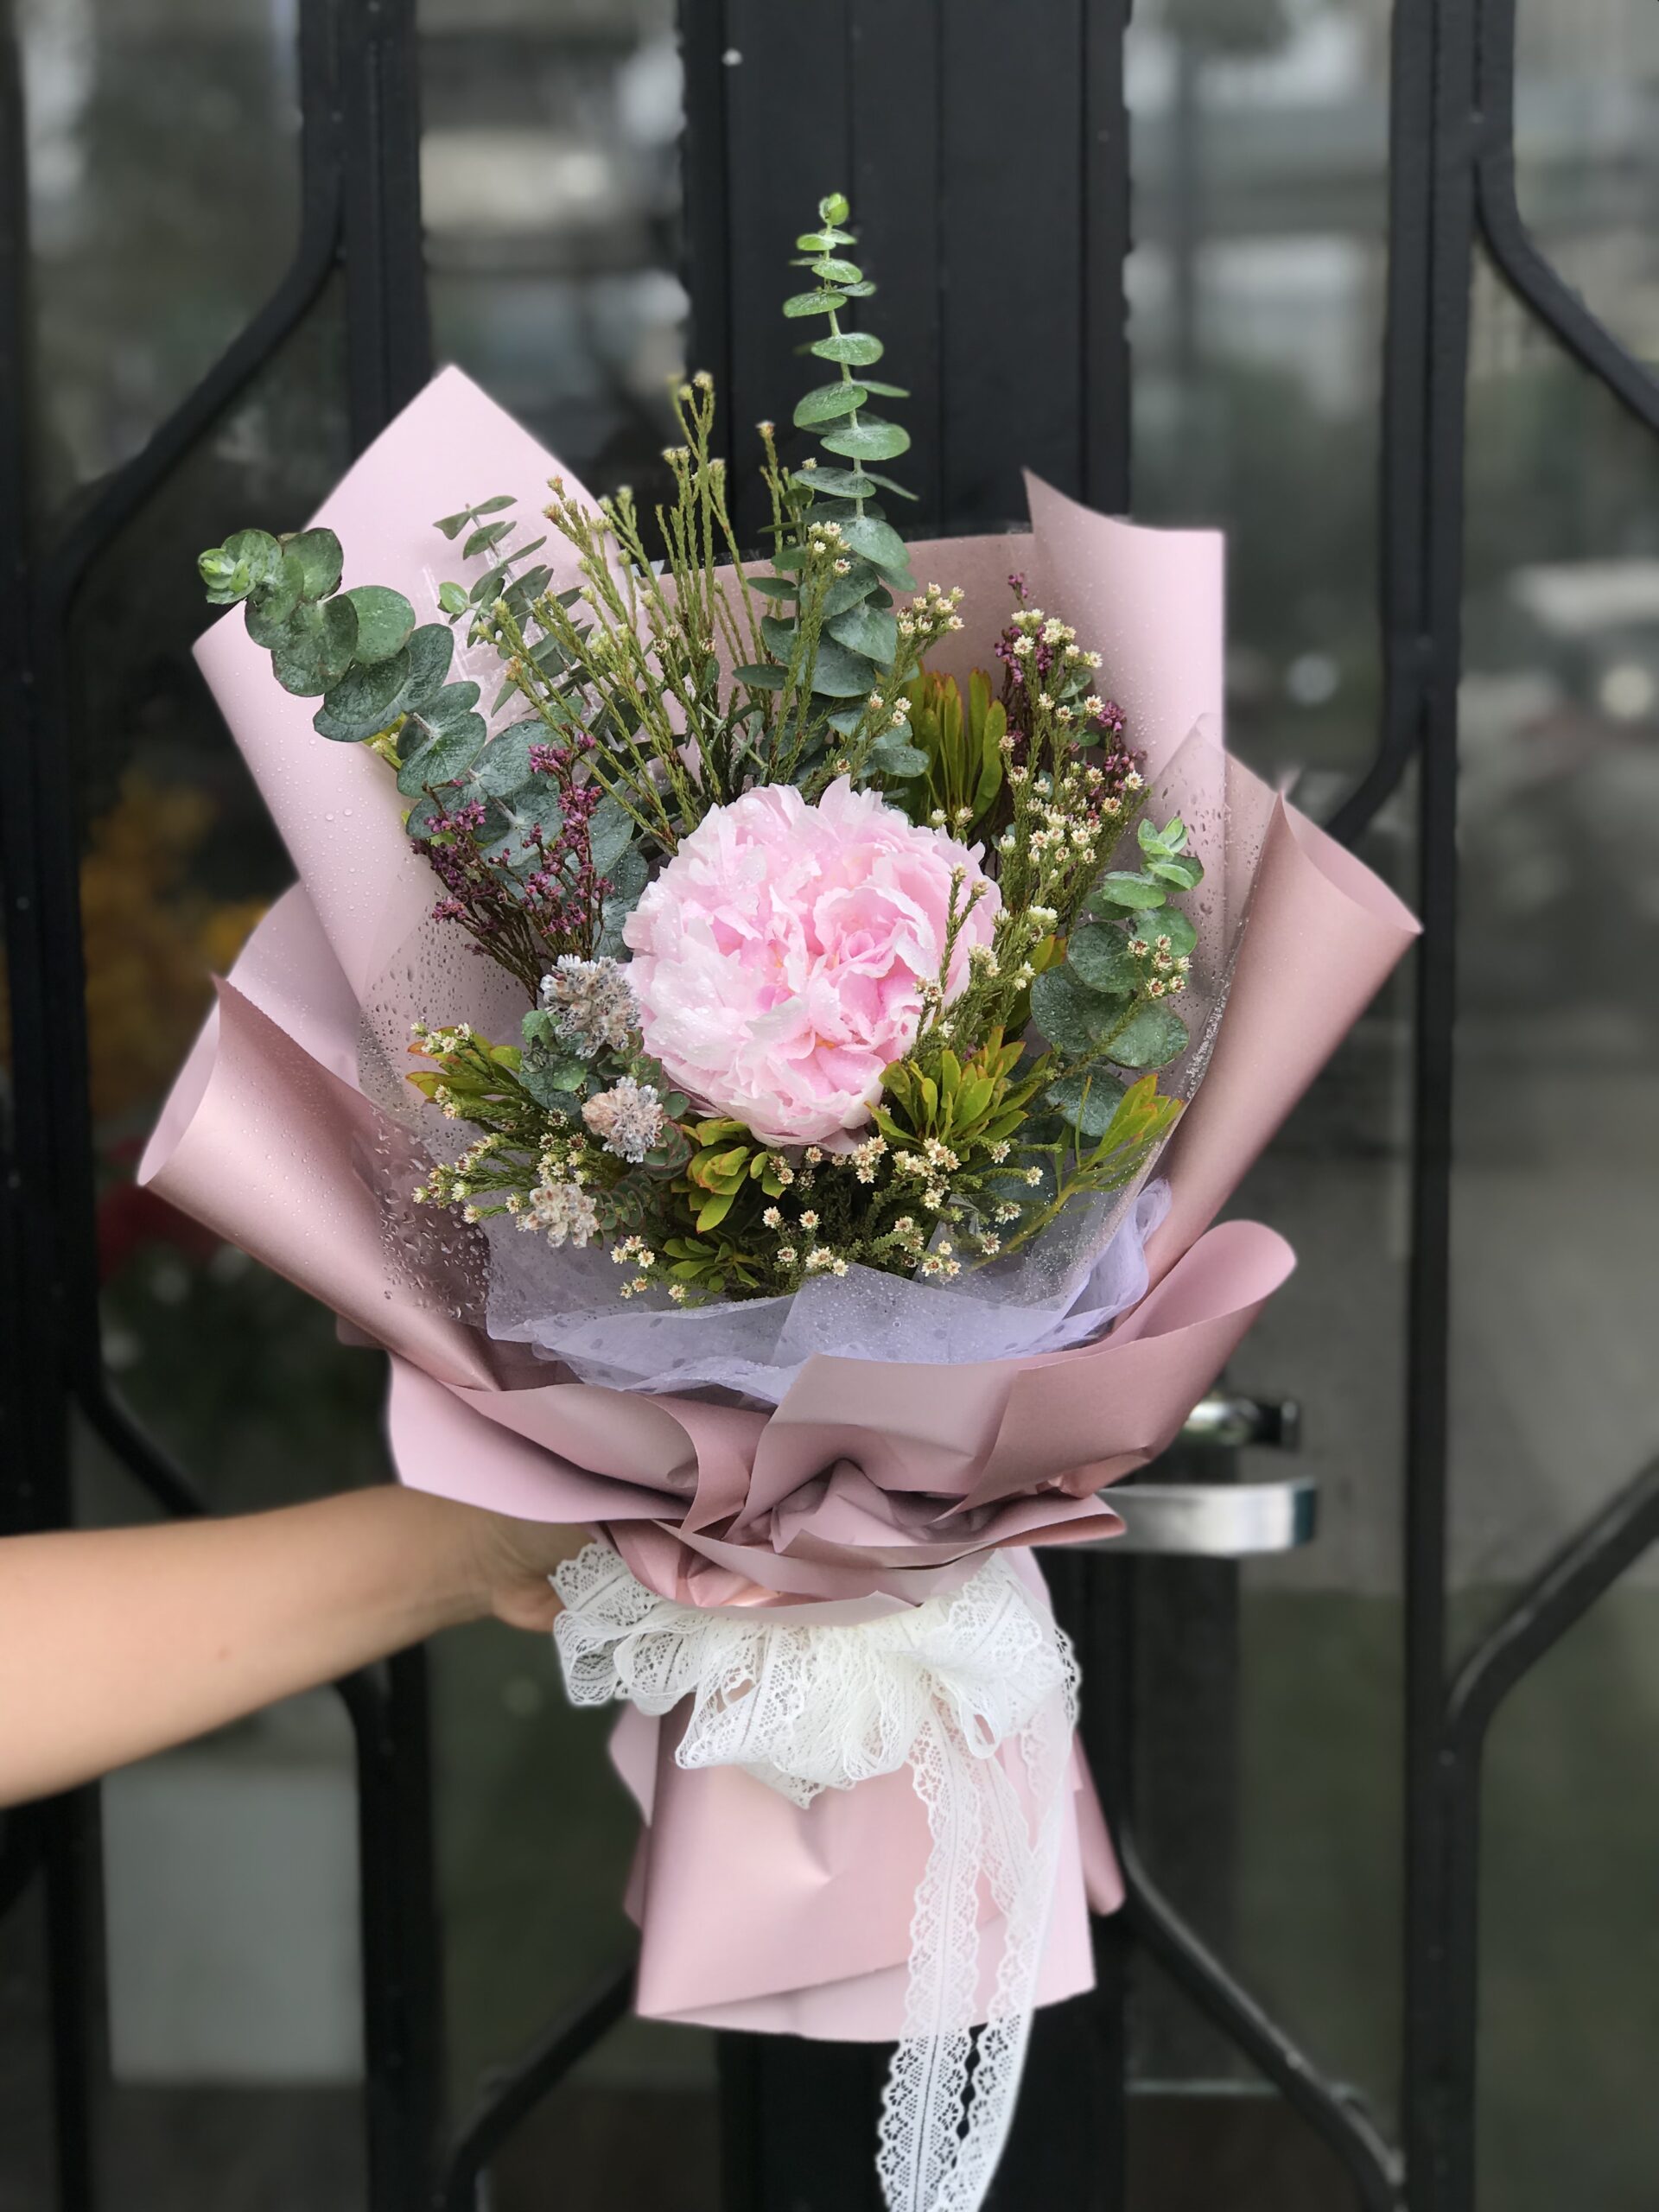 Shop hoa Mr Hoa - Cửa hàng hoa tươi Bắc Ninh có nhiều ưu đãi đặc biệt 